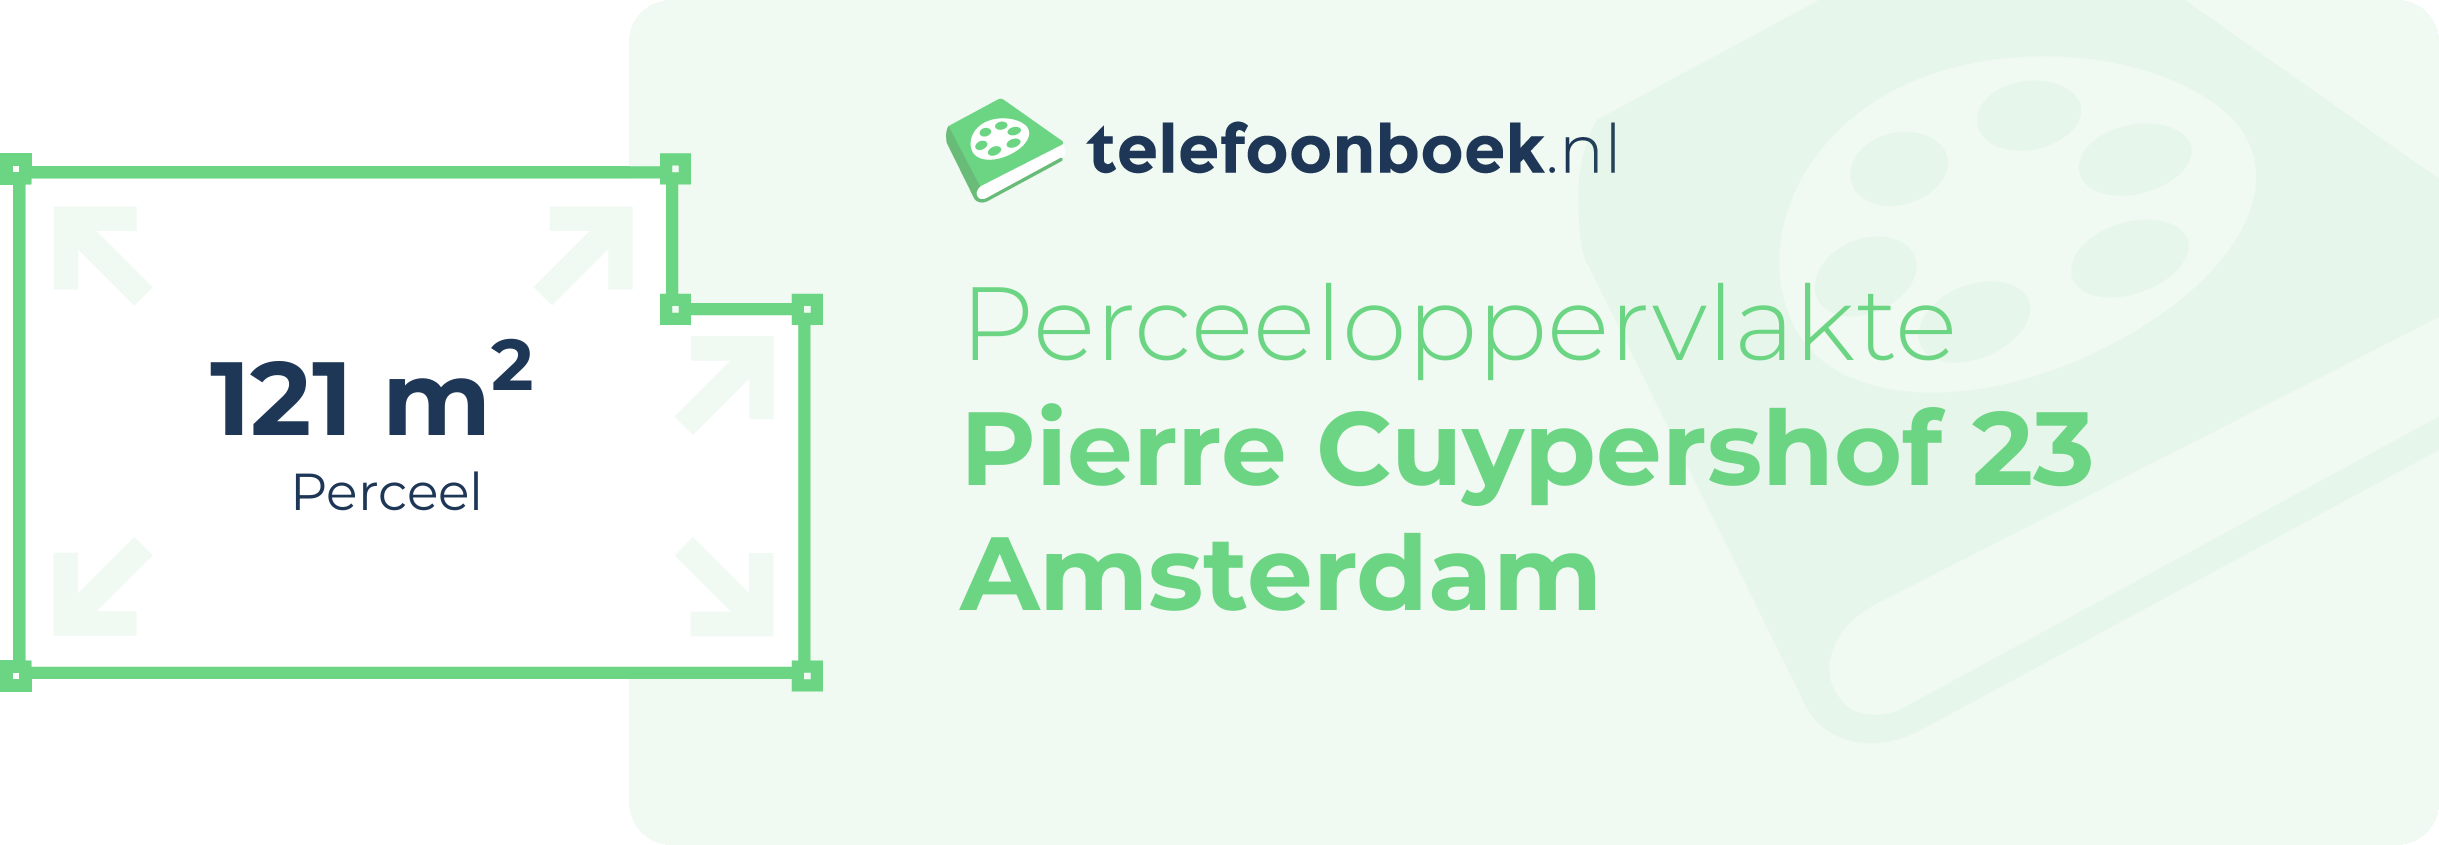 Perceeloppervlakte Pierre Cuypershof 23 Amsterdam